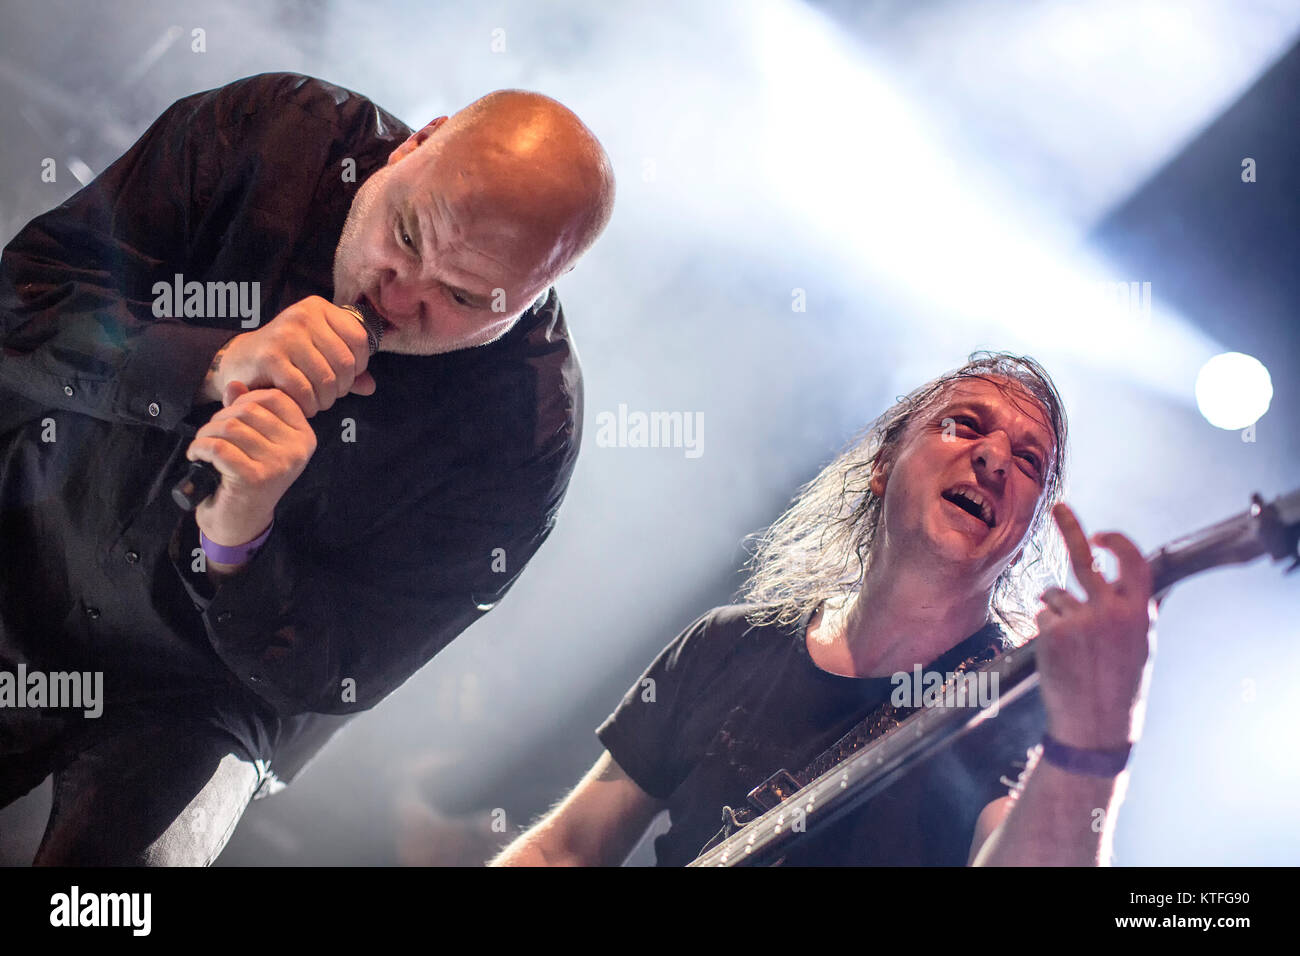 Die norwegische Black-Metal-Band Mayhem führt ein Live Konzert am Rockefeller als Teil des Festivals Inferno Metal Festival 2016 in Oslo. Hier Bass Player Necrobutcher wird gesehen, live auf der Bühne mit ex-Sänger Messias. Norwegen, 27/03 2016. Stockfoto